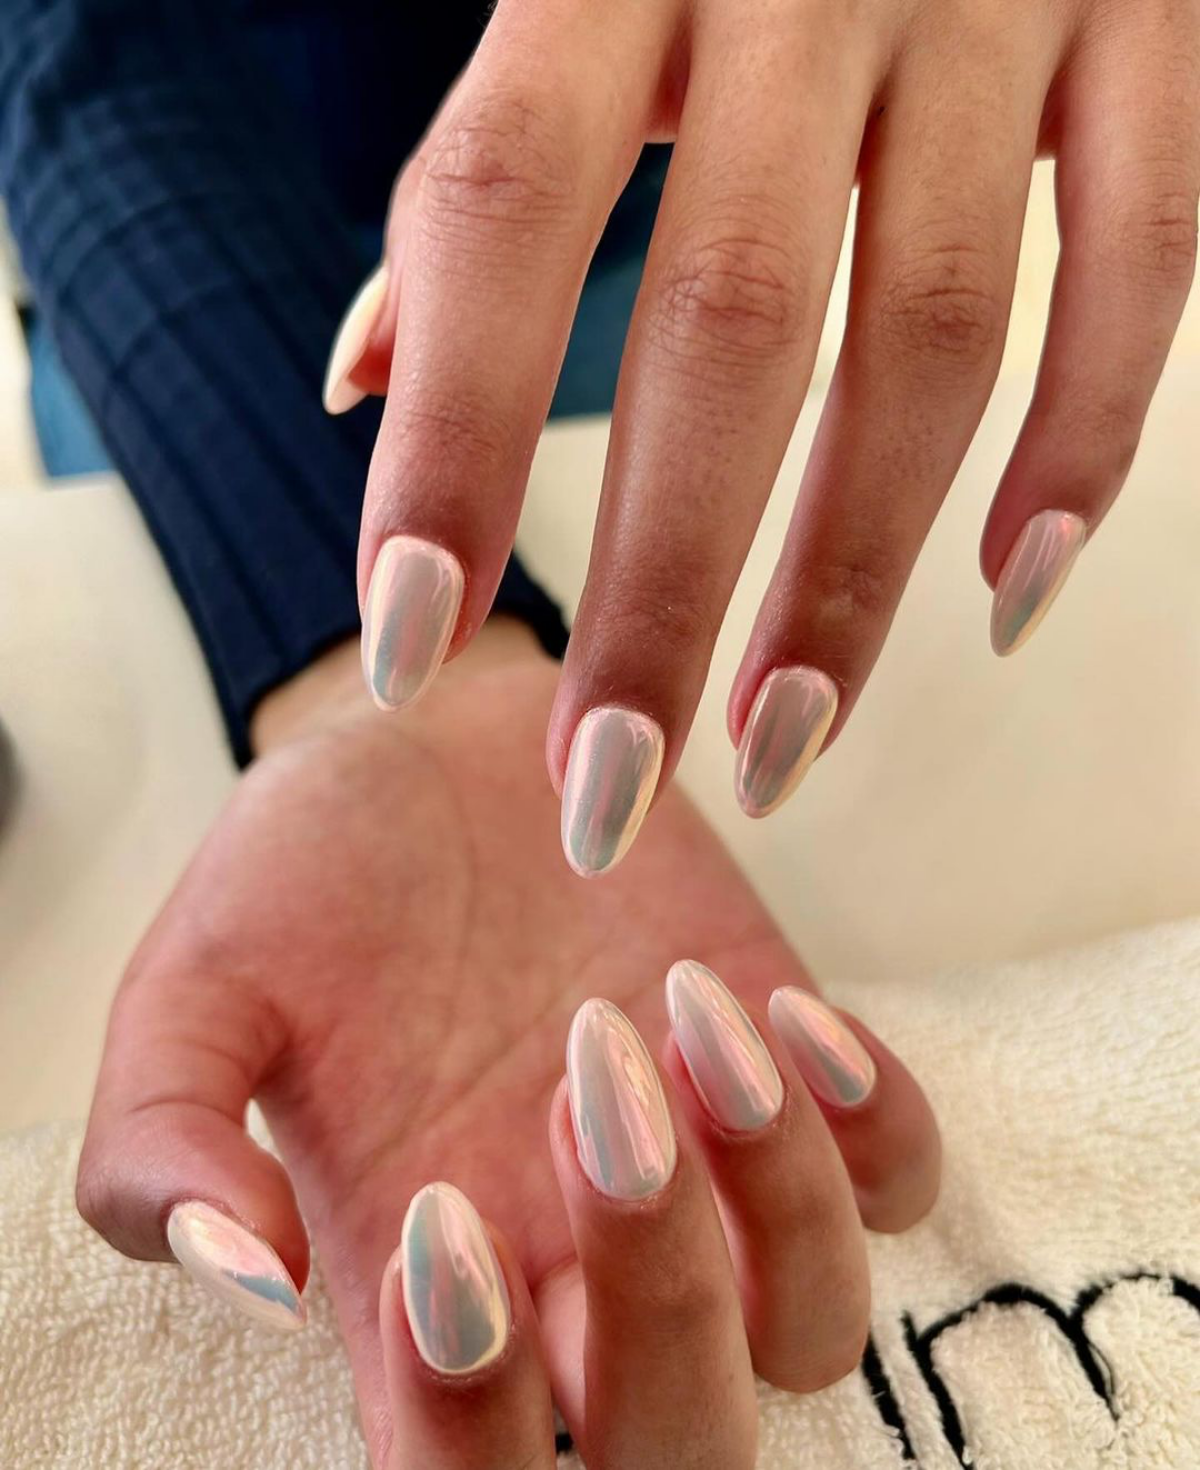 shiny milky white nails glazed